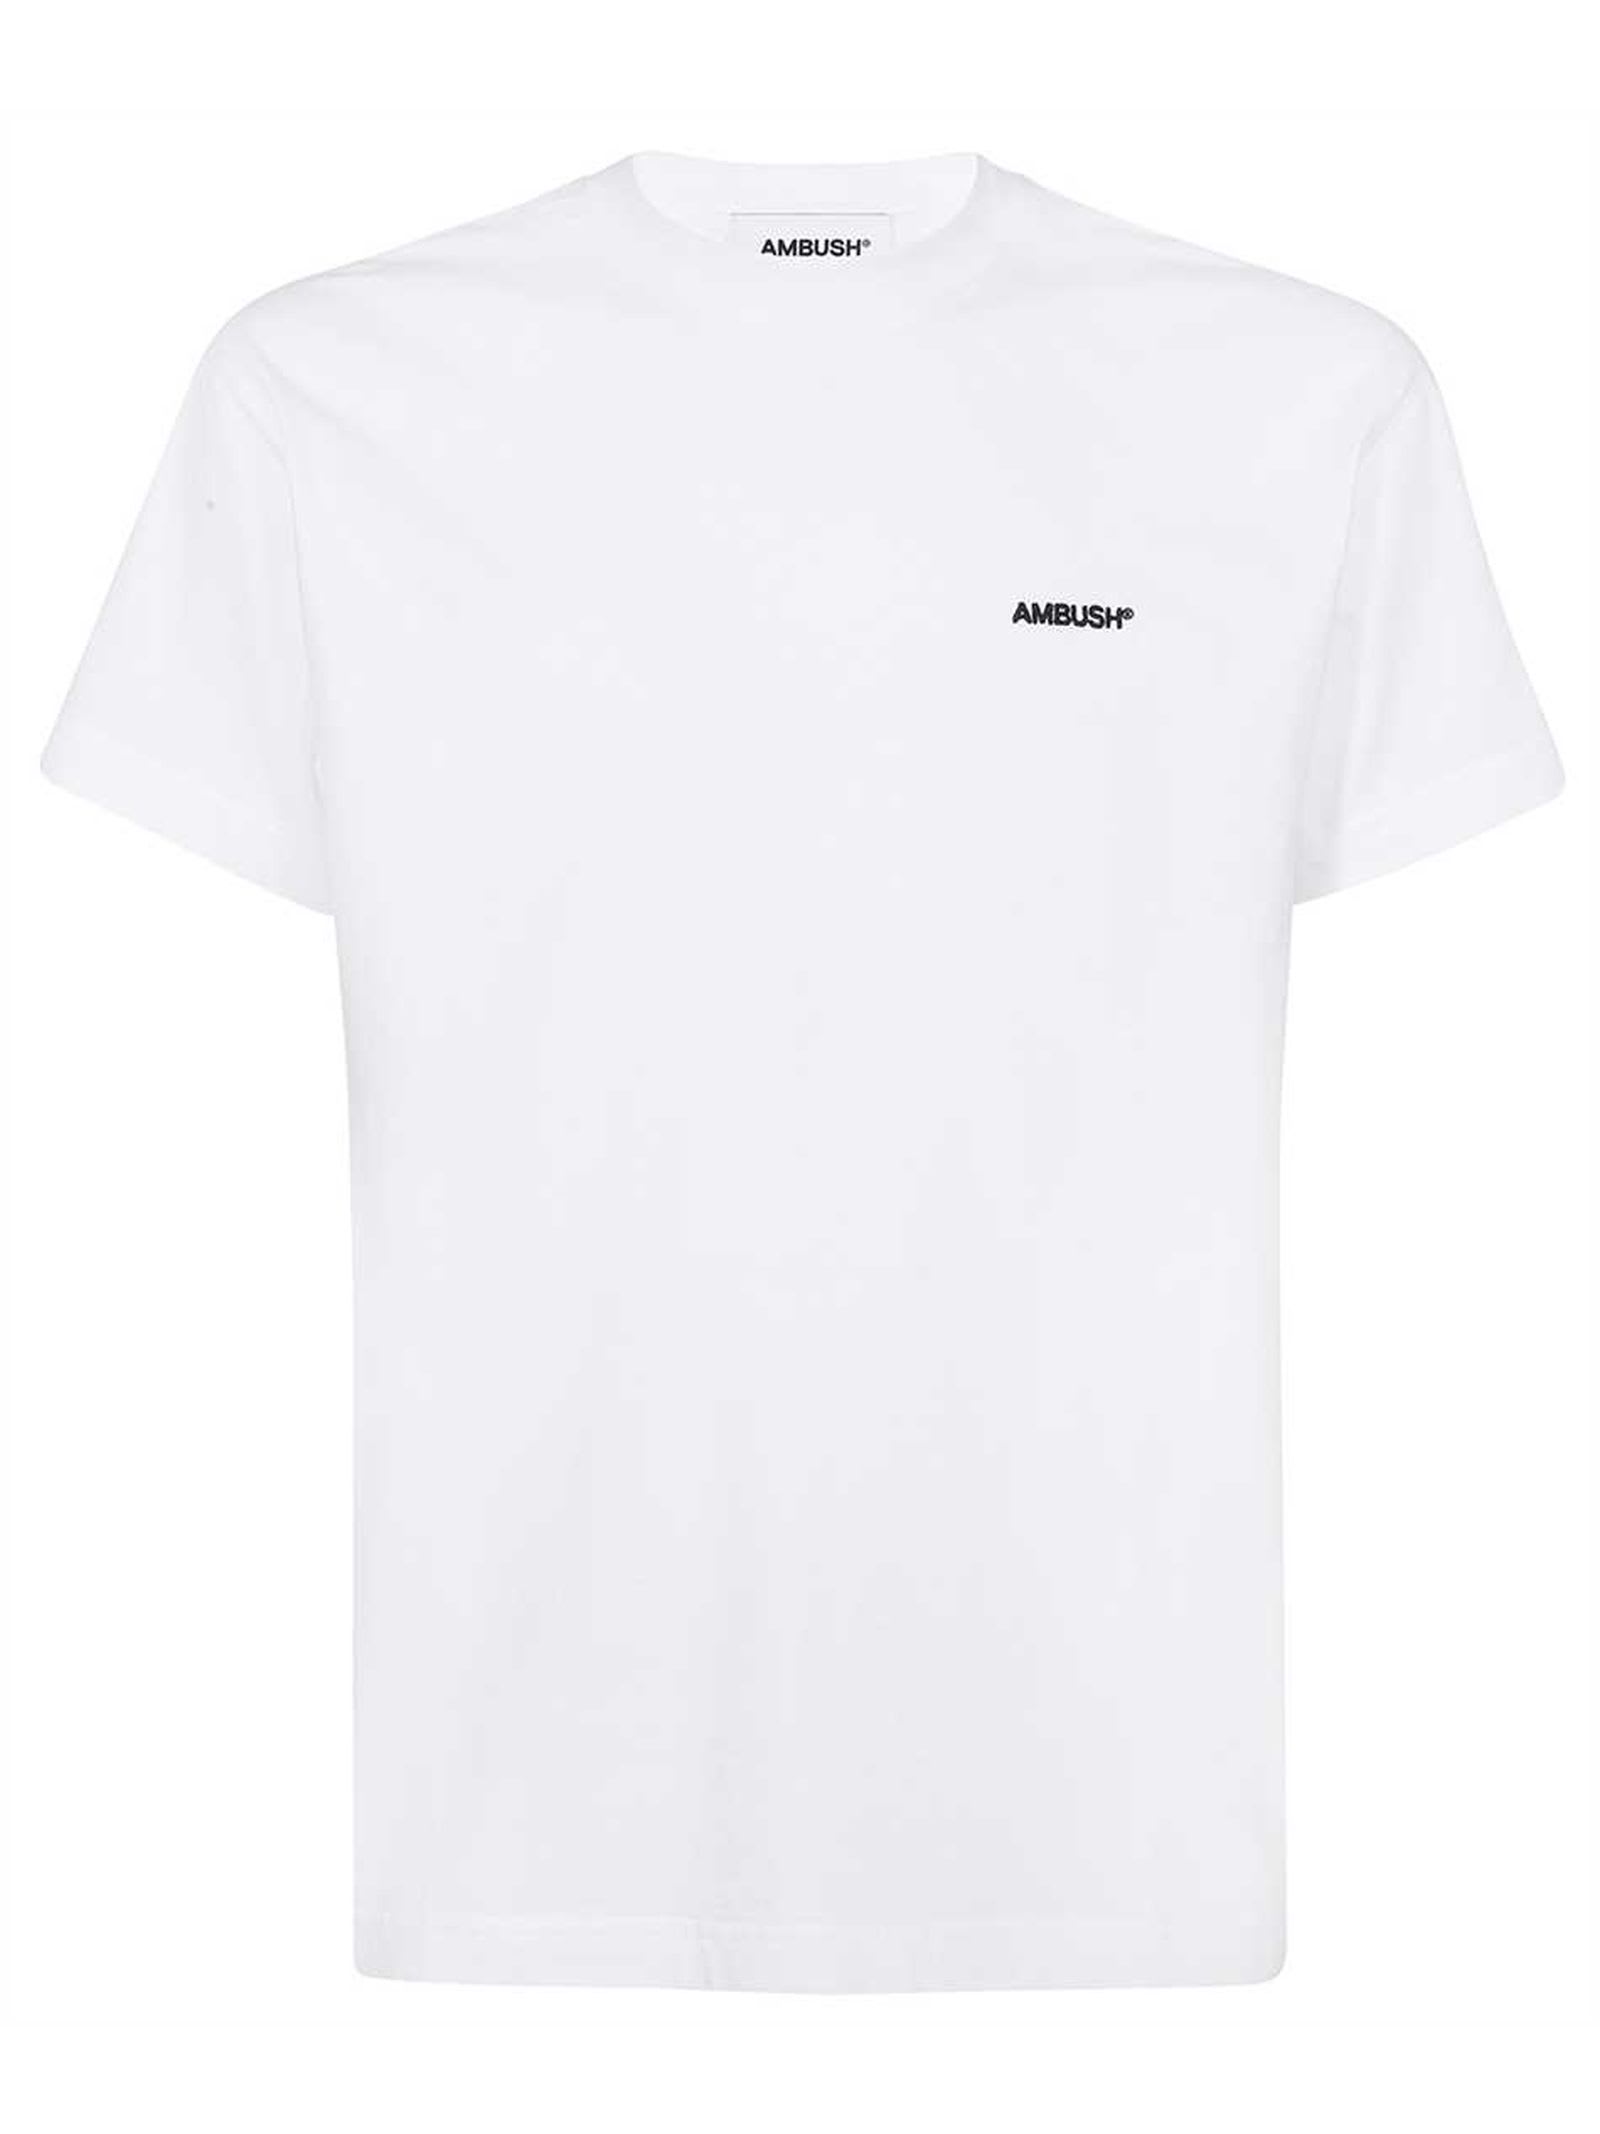 Ambush White Cotton T-Shirt Set (Set Of Three)